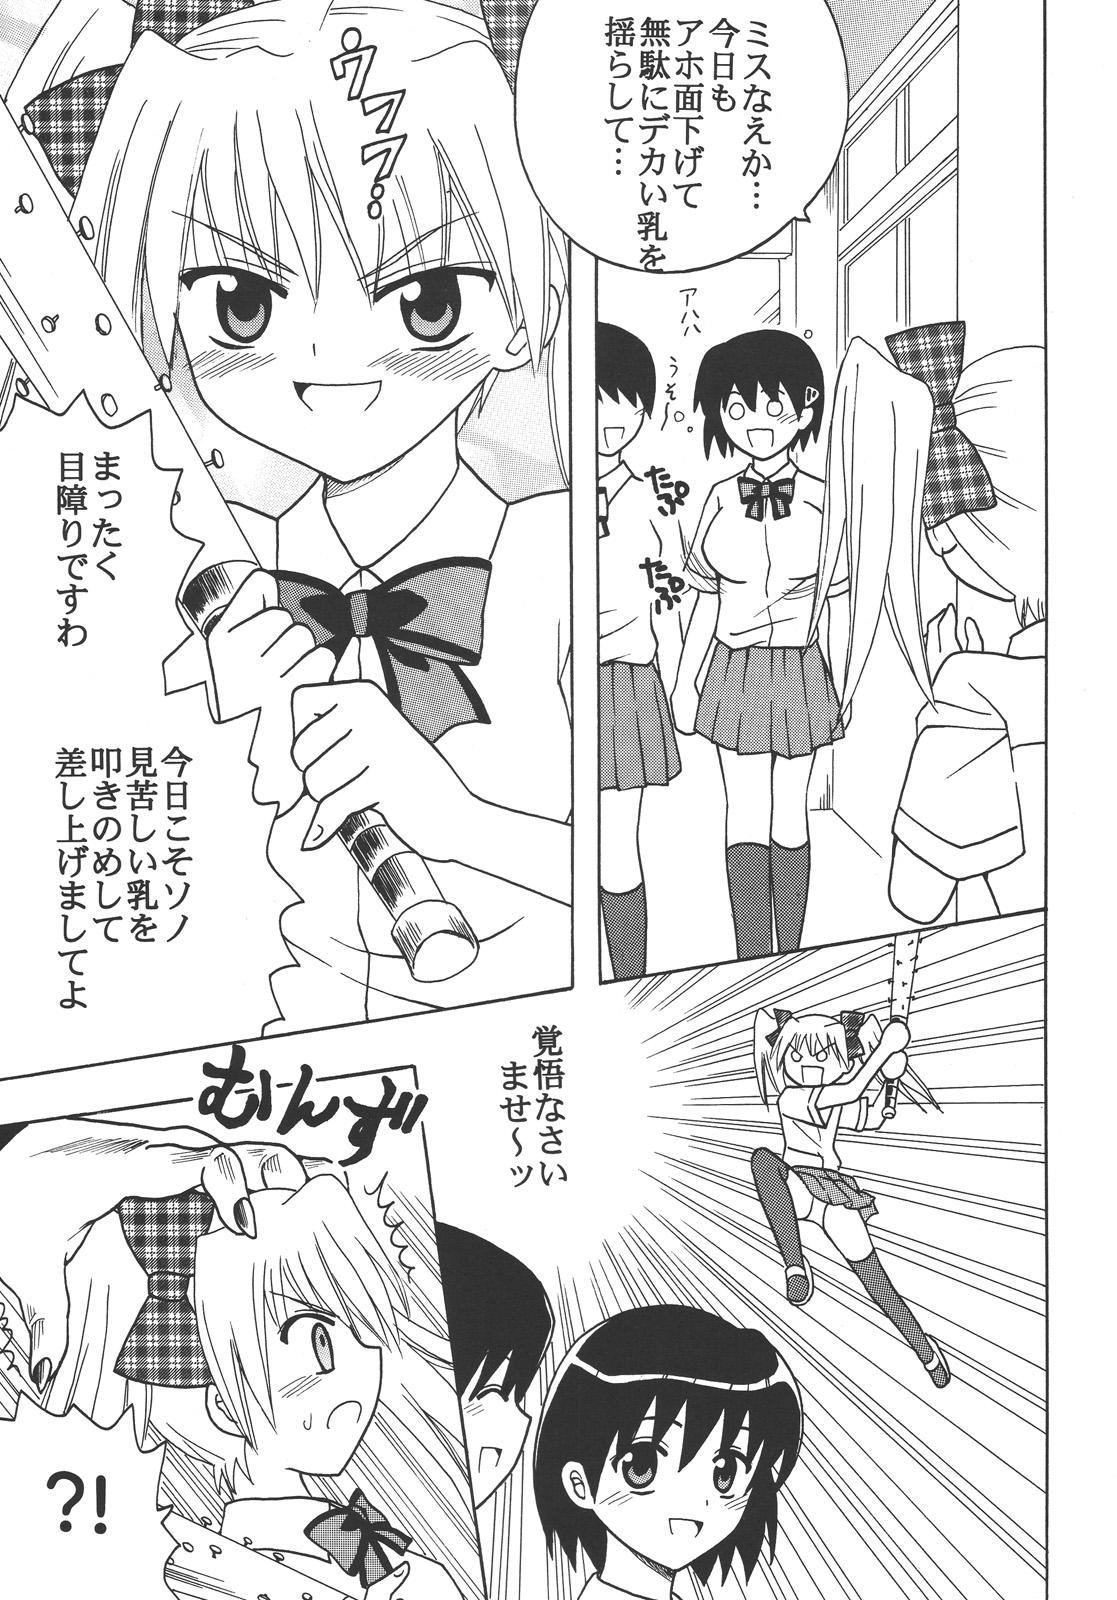 Black Girl Nakadashi Maid no Hinkaku 3 - Kamen no maid guy 8teenxxx - Page 4